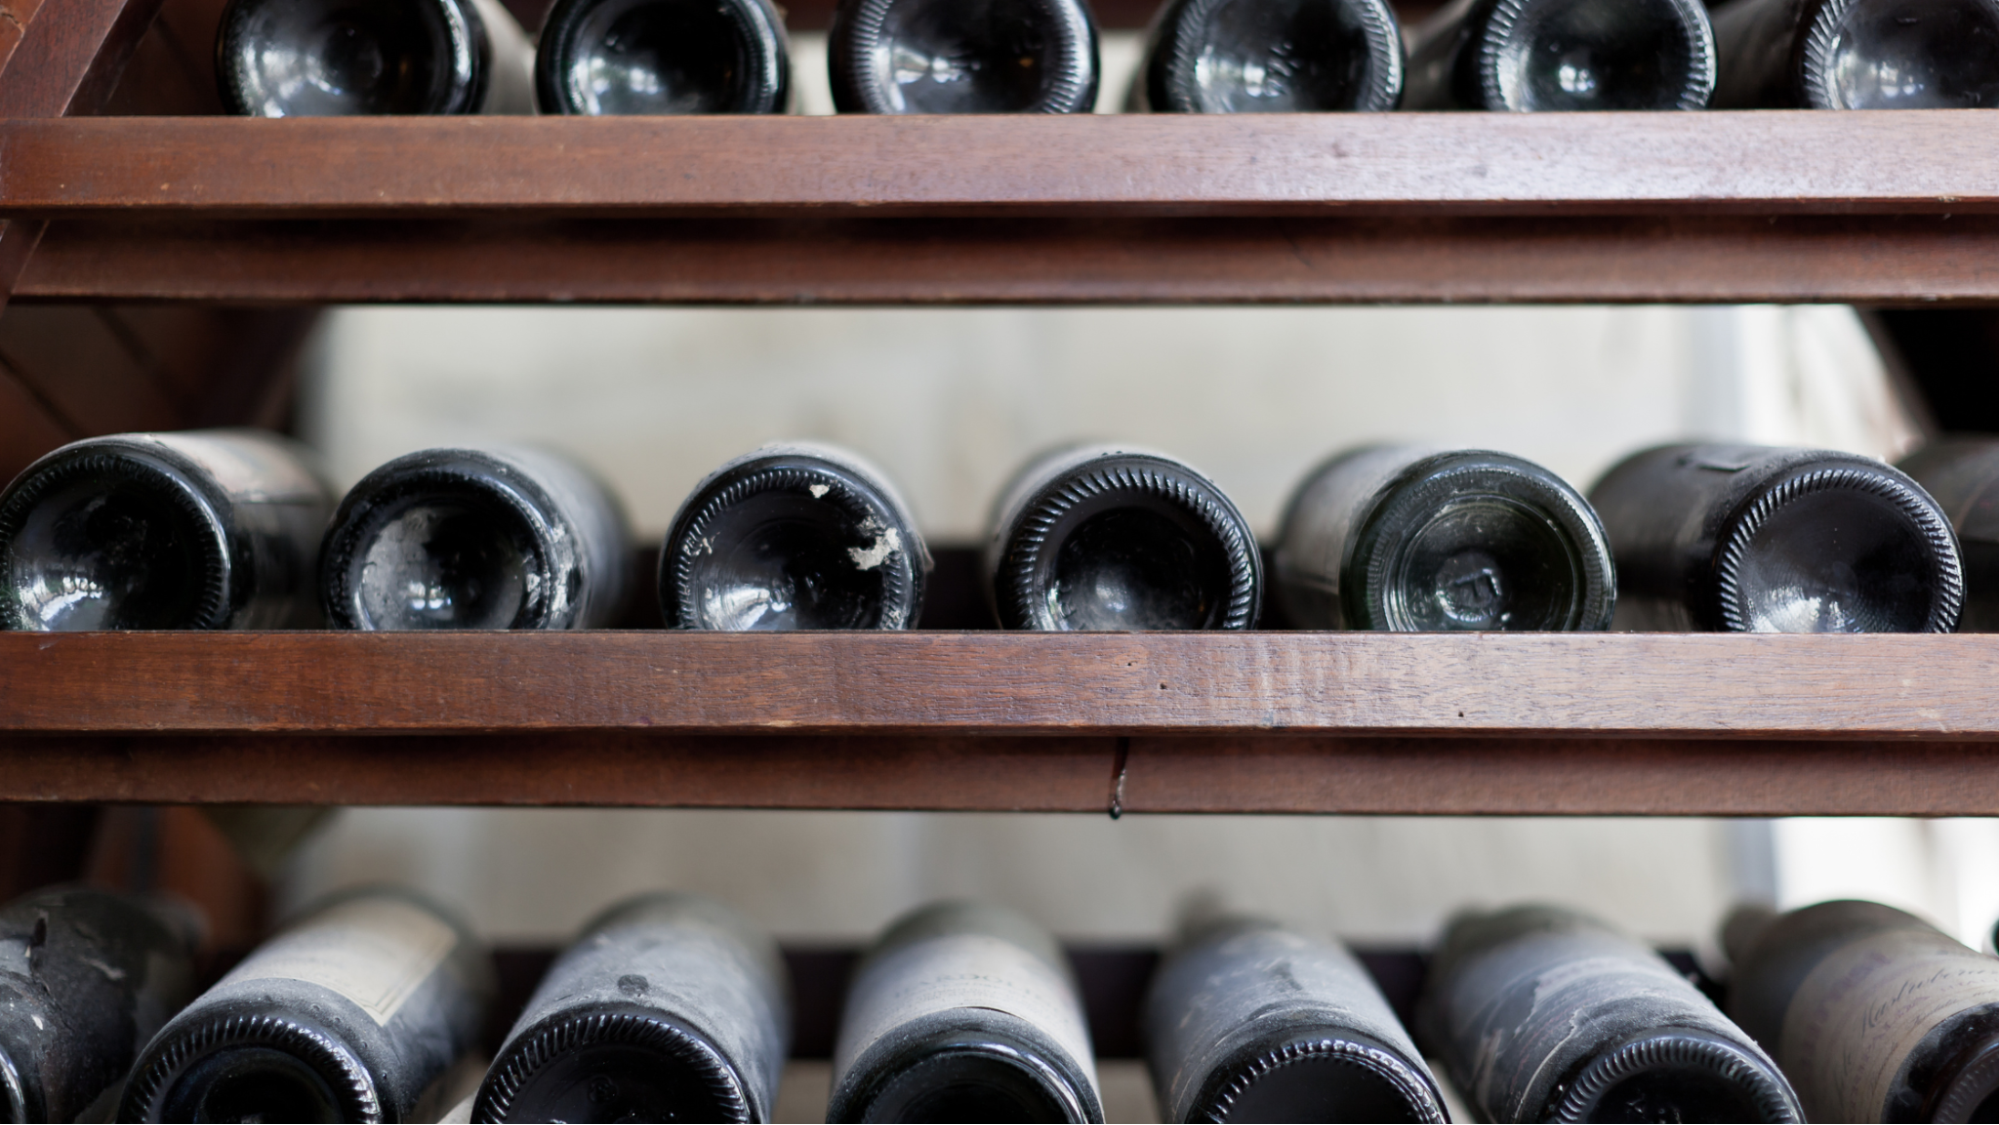 Wine bottles on wine racks